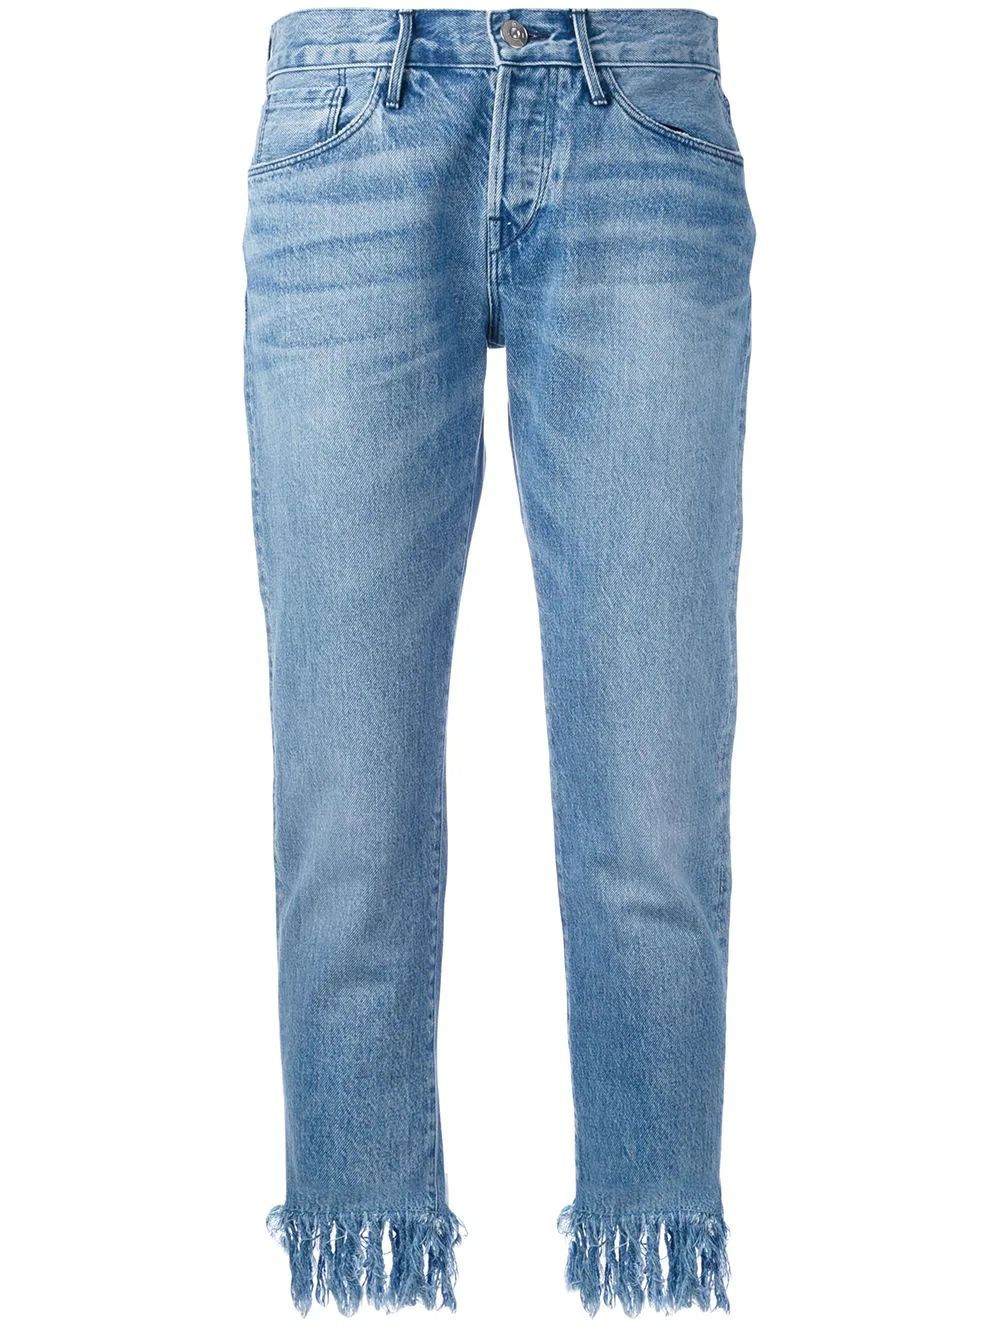 3x1 tassel fringe jeans - Blue | FarFetch US